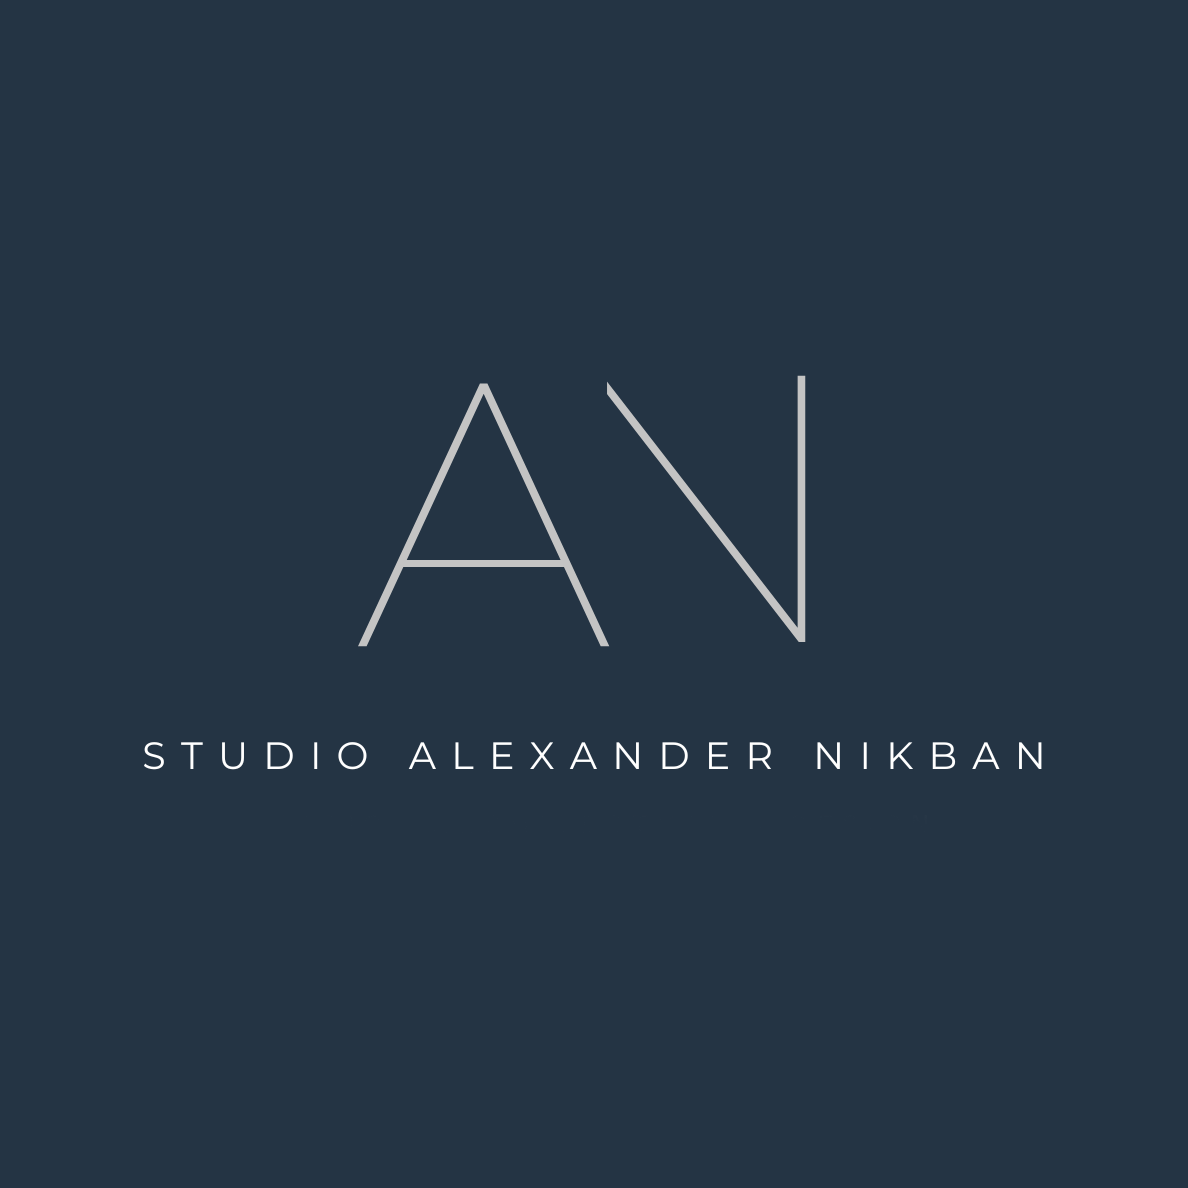 STUDIO ALEXANDER NIKBAN